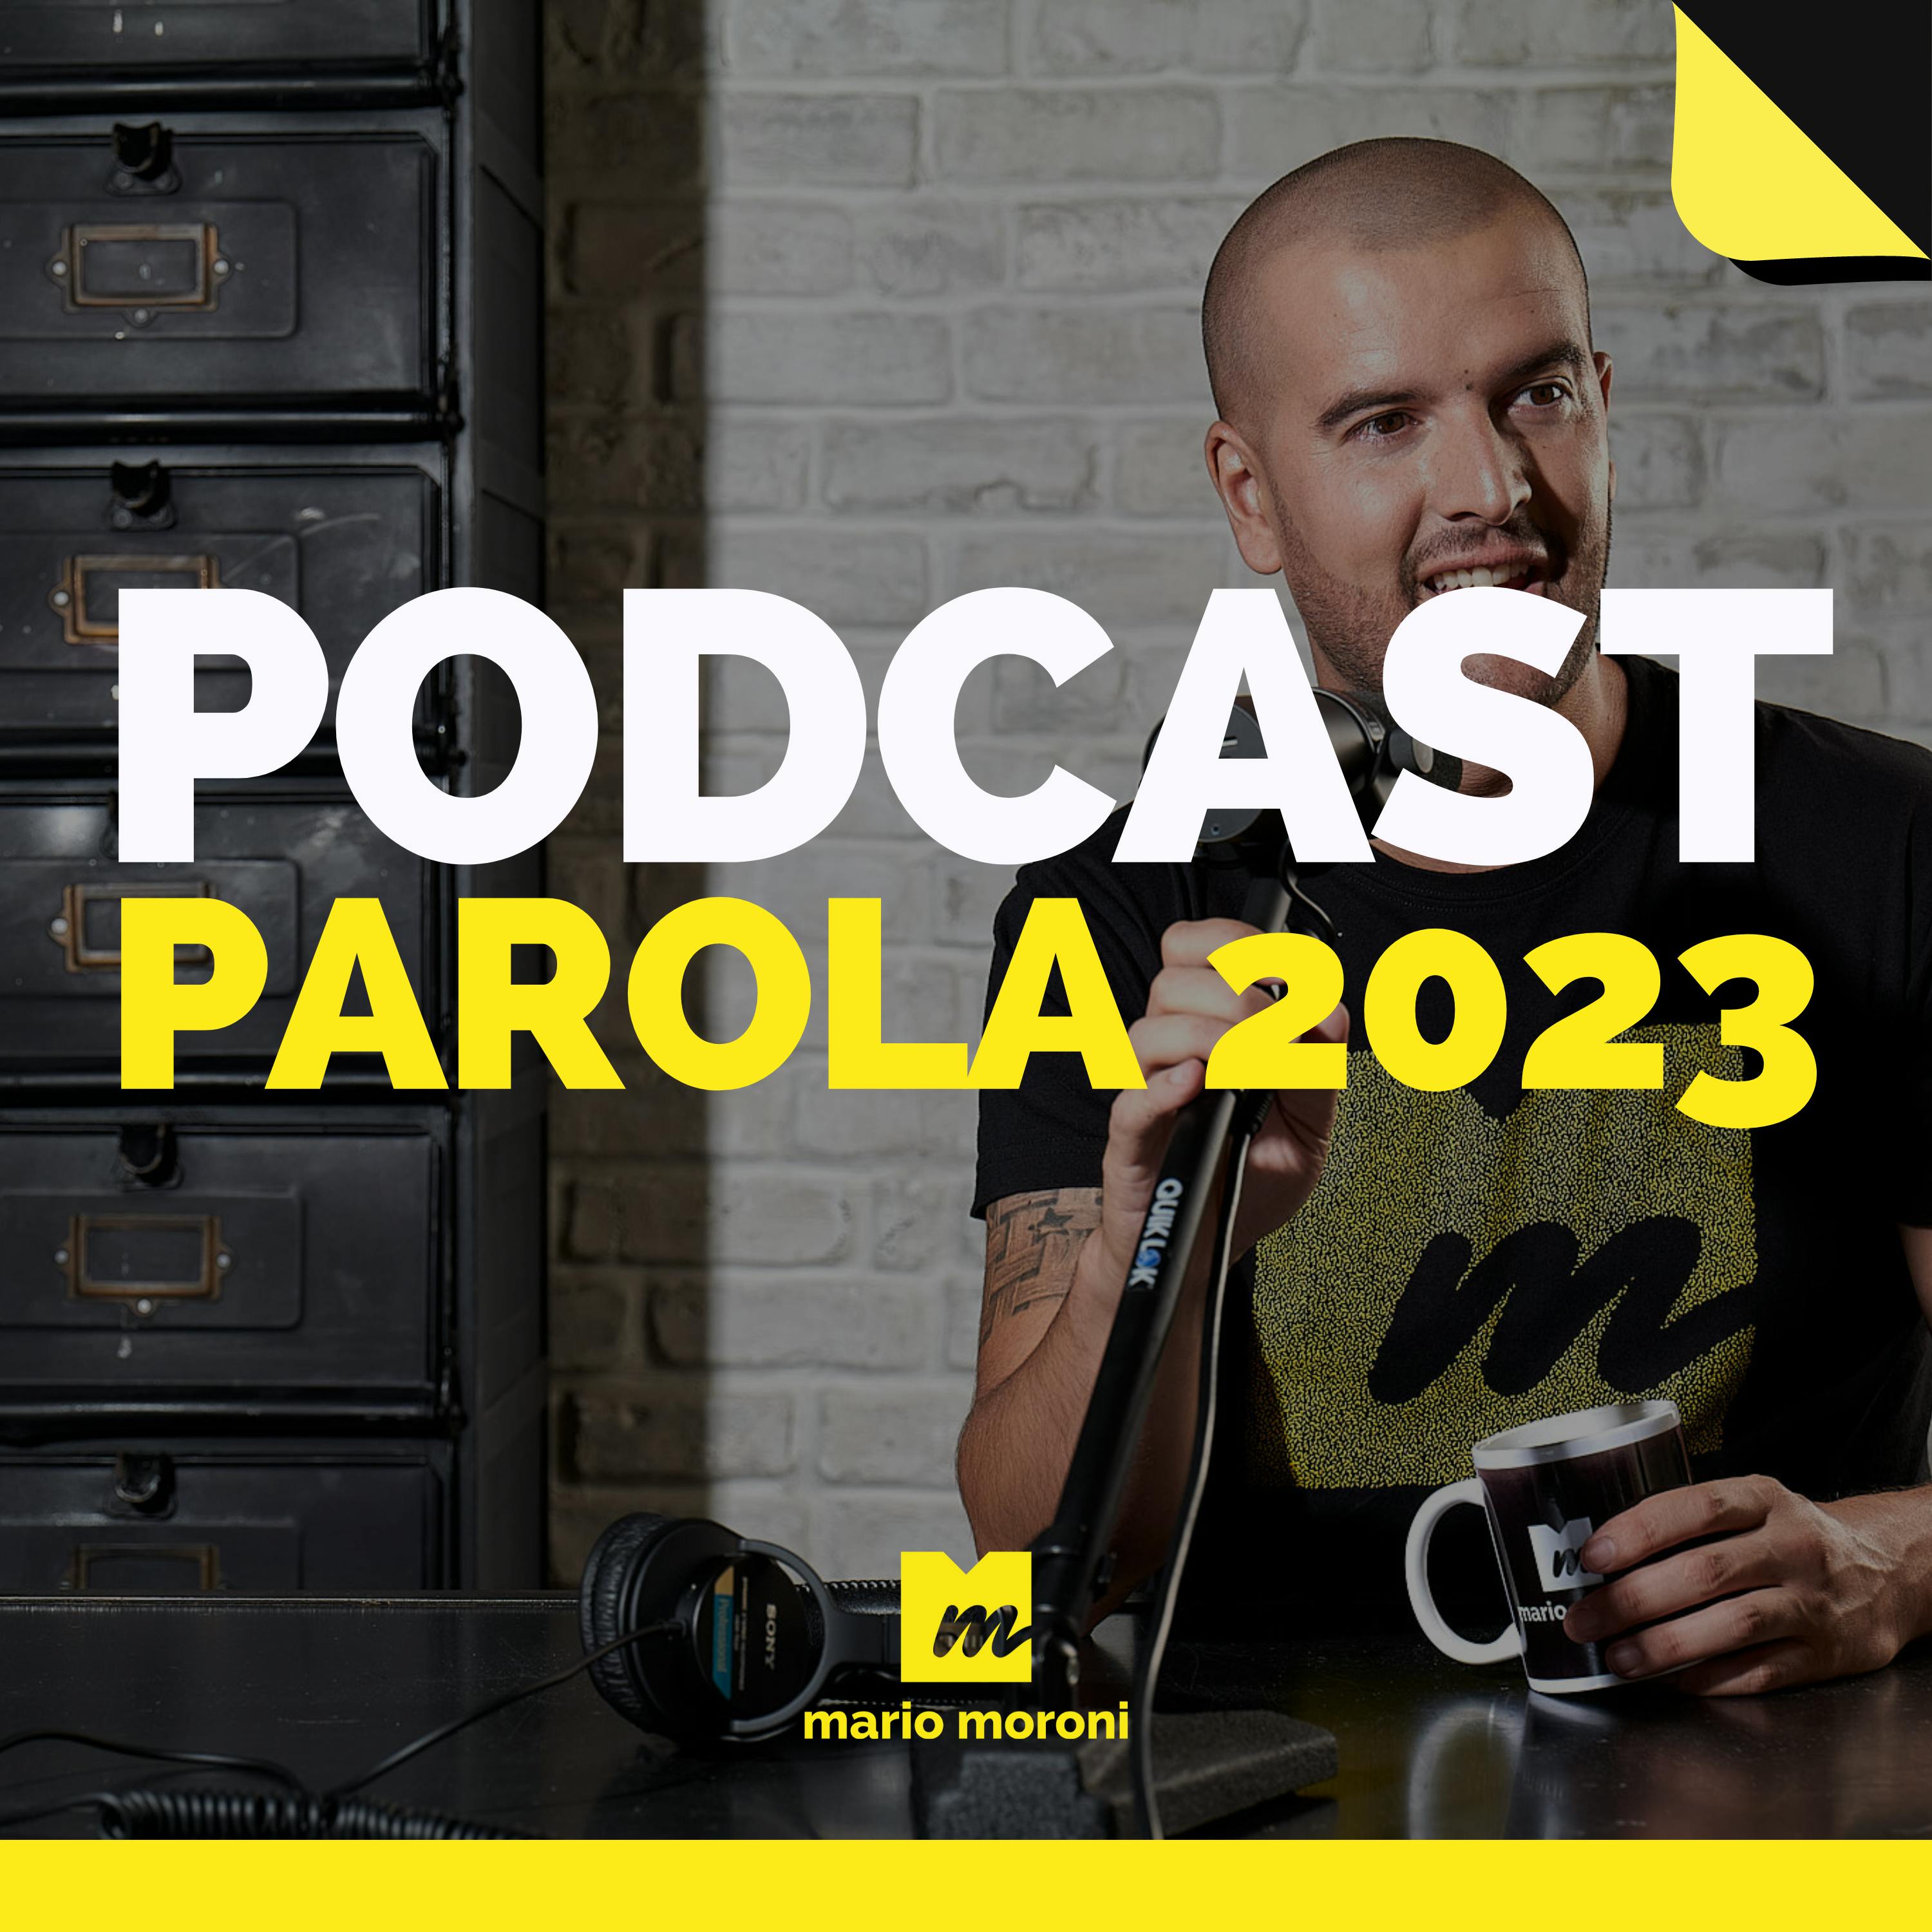 Il 2023 sarà l’anno del Podcast o dell’intelligenza artificiale?